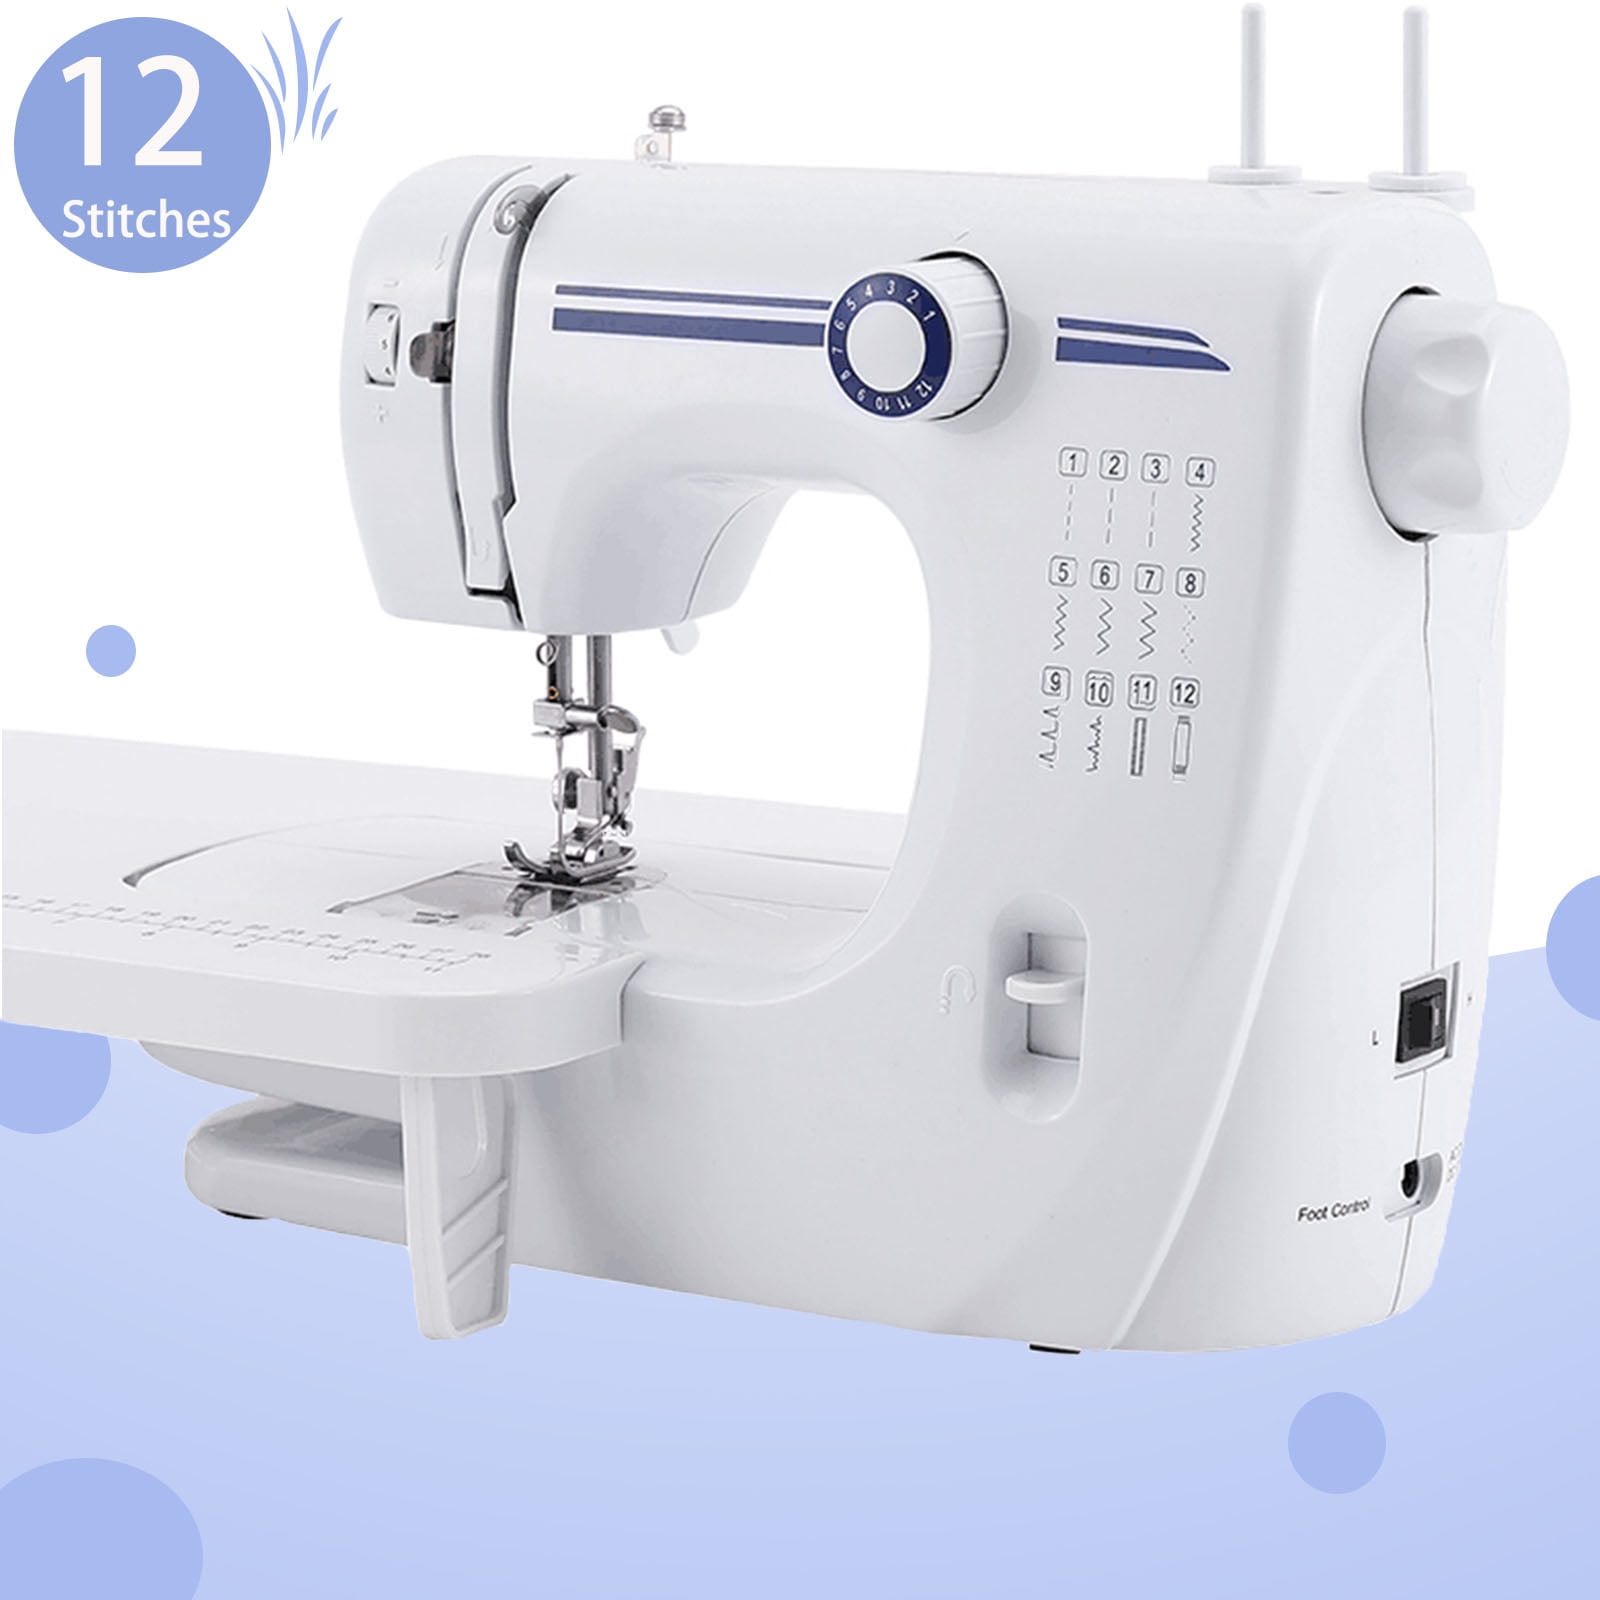 VIFERR 19 Stitches Sewing Machine MultiFunctional Mini Portable